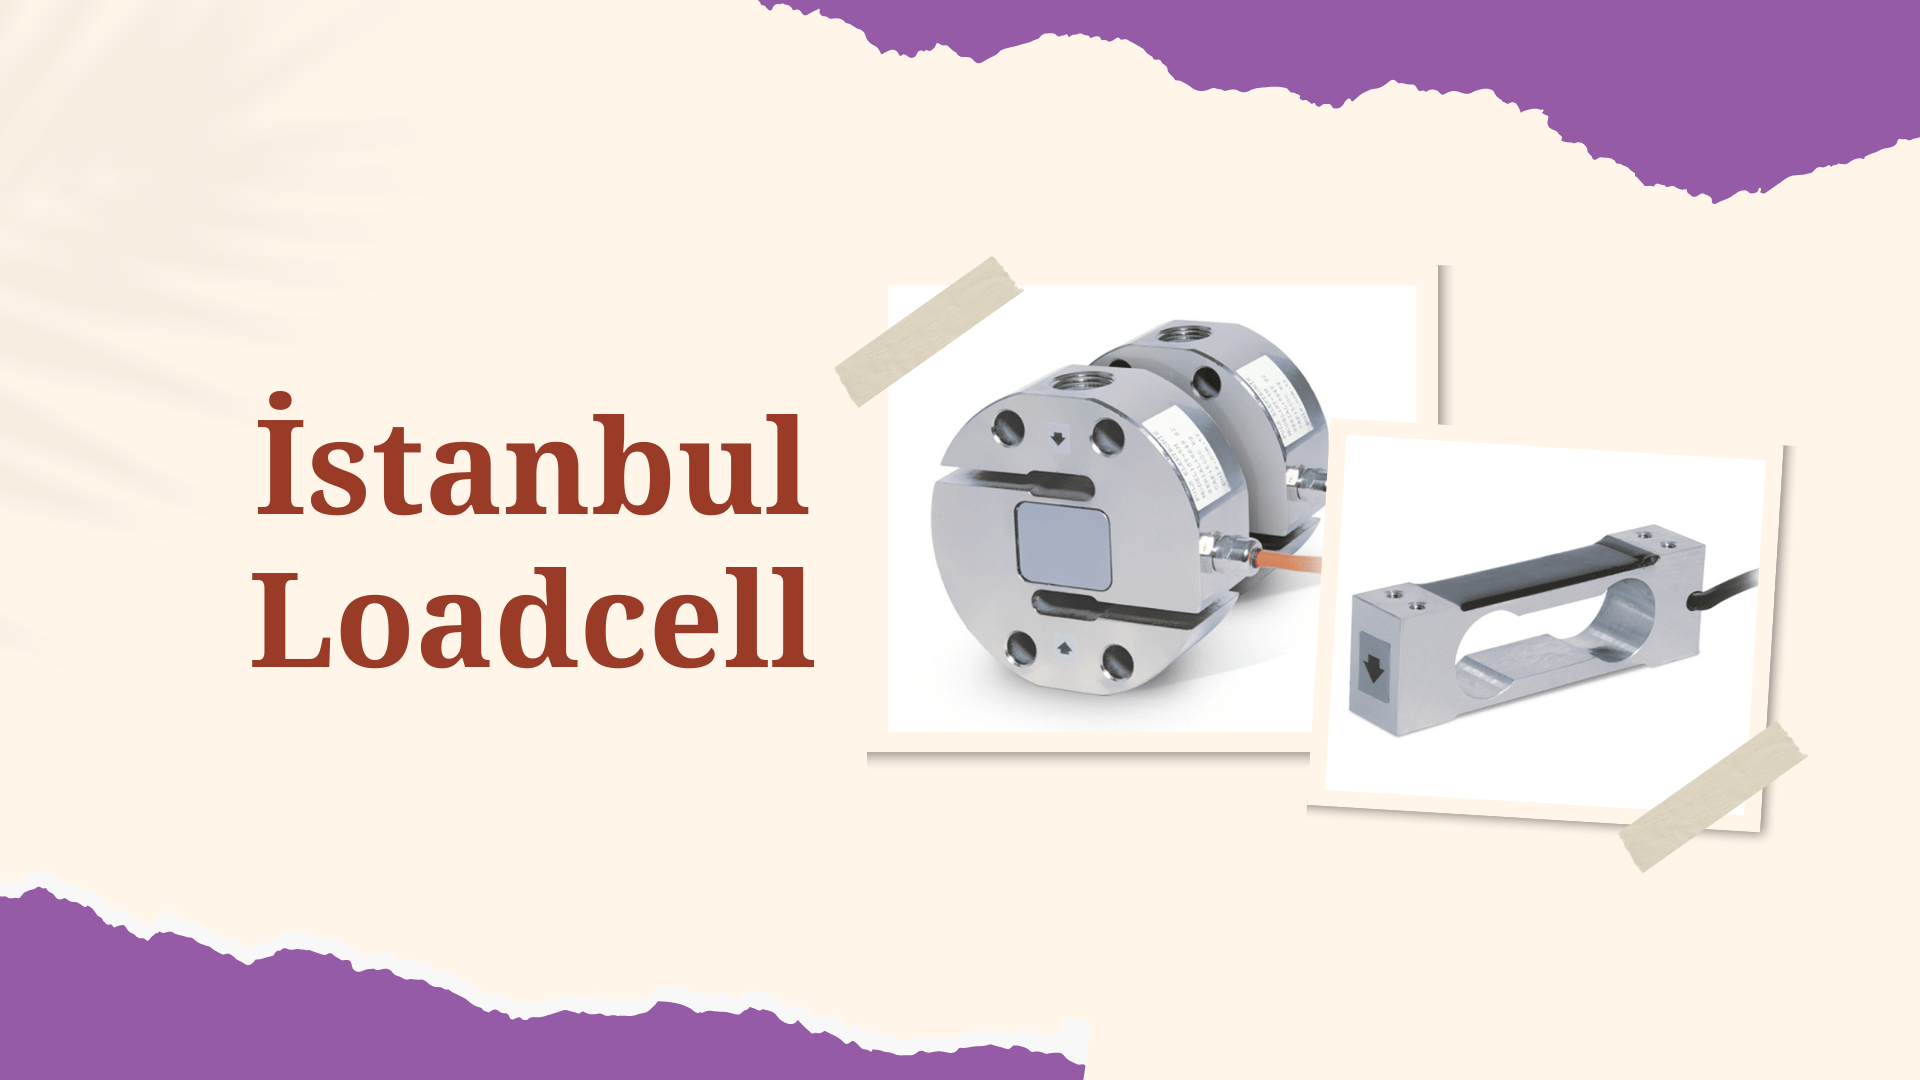 İstanbul Loadcell, Loadcell İstanbul, İstanbul Loadcell Fiyatları, Loadcell Fiyatları İstanbul, İstanbul Loadcell Firmaları, Loadcell Firmaları İstanbul